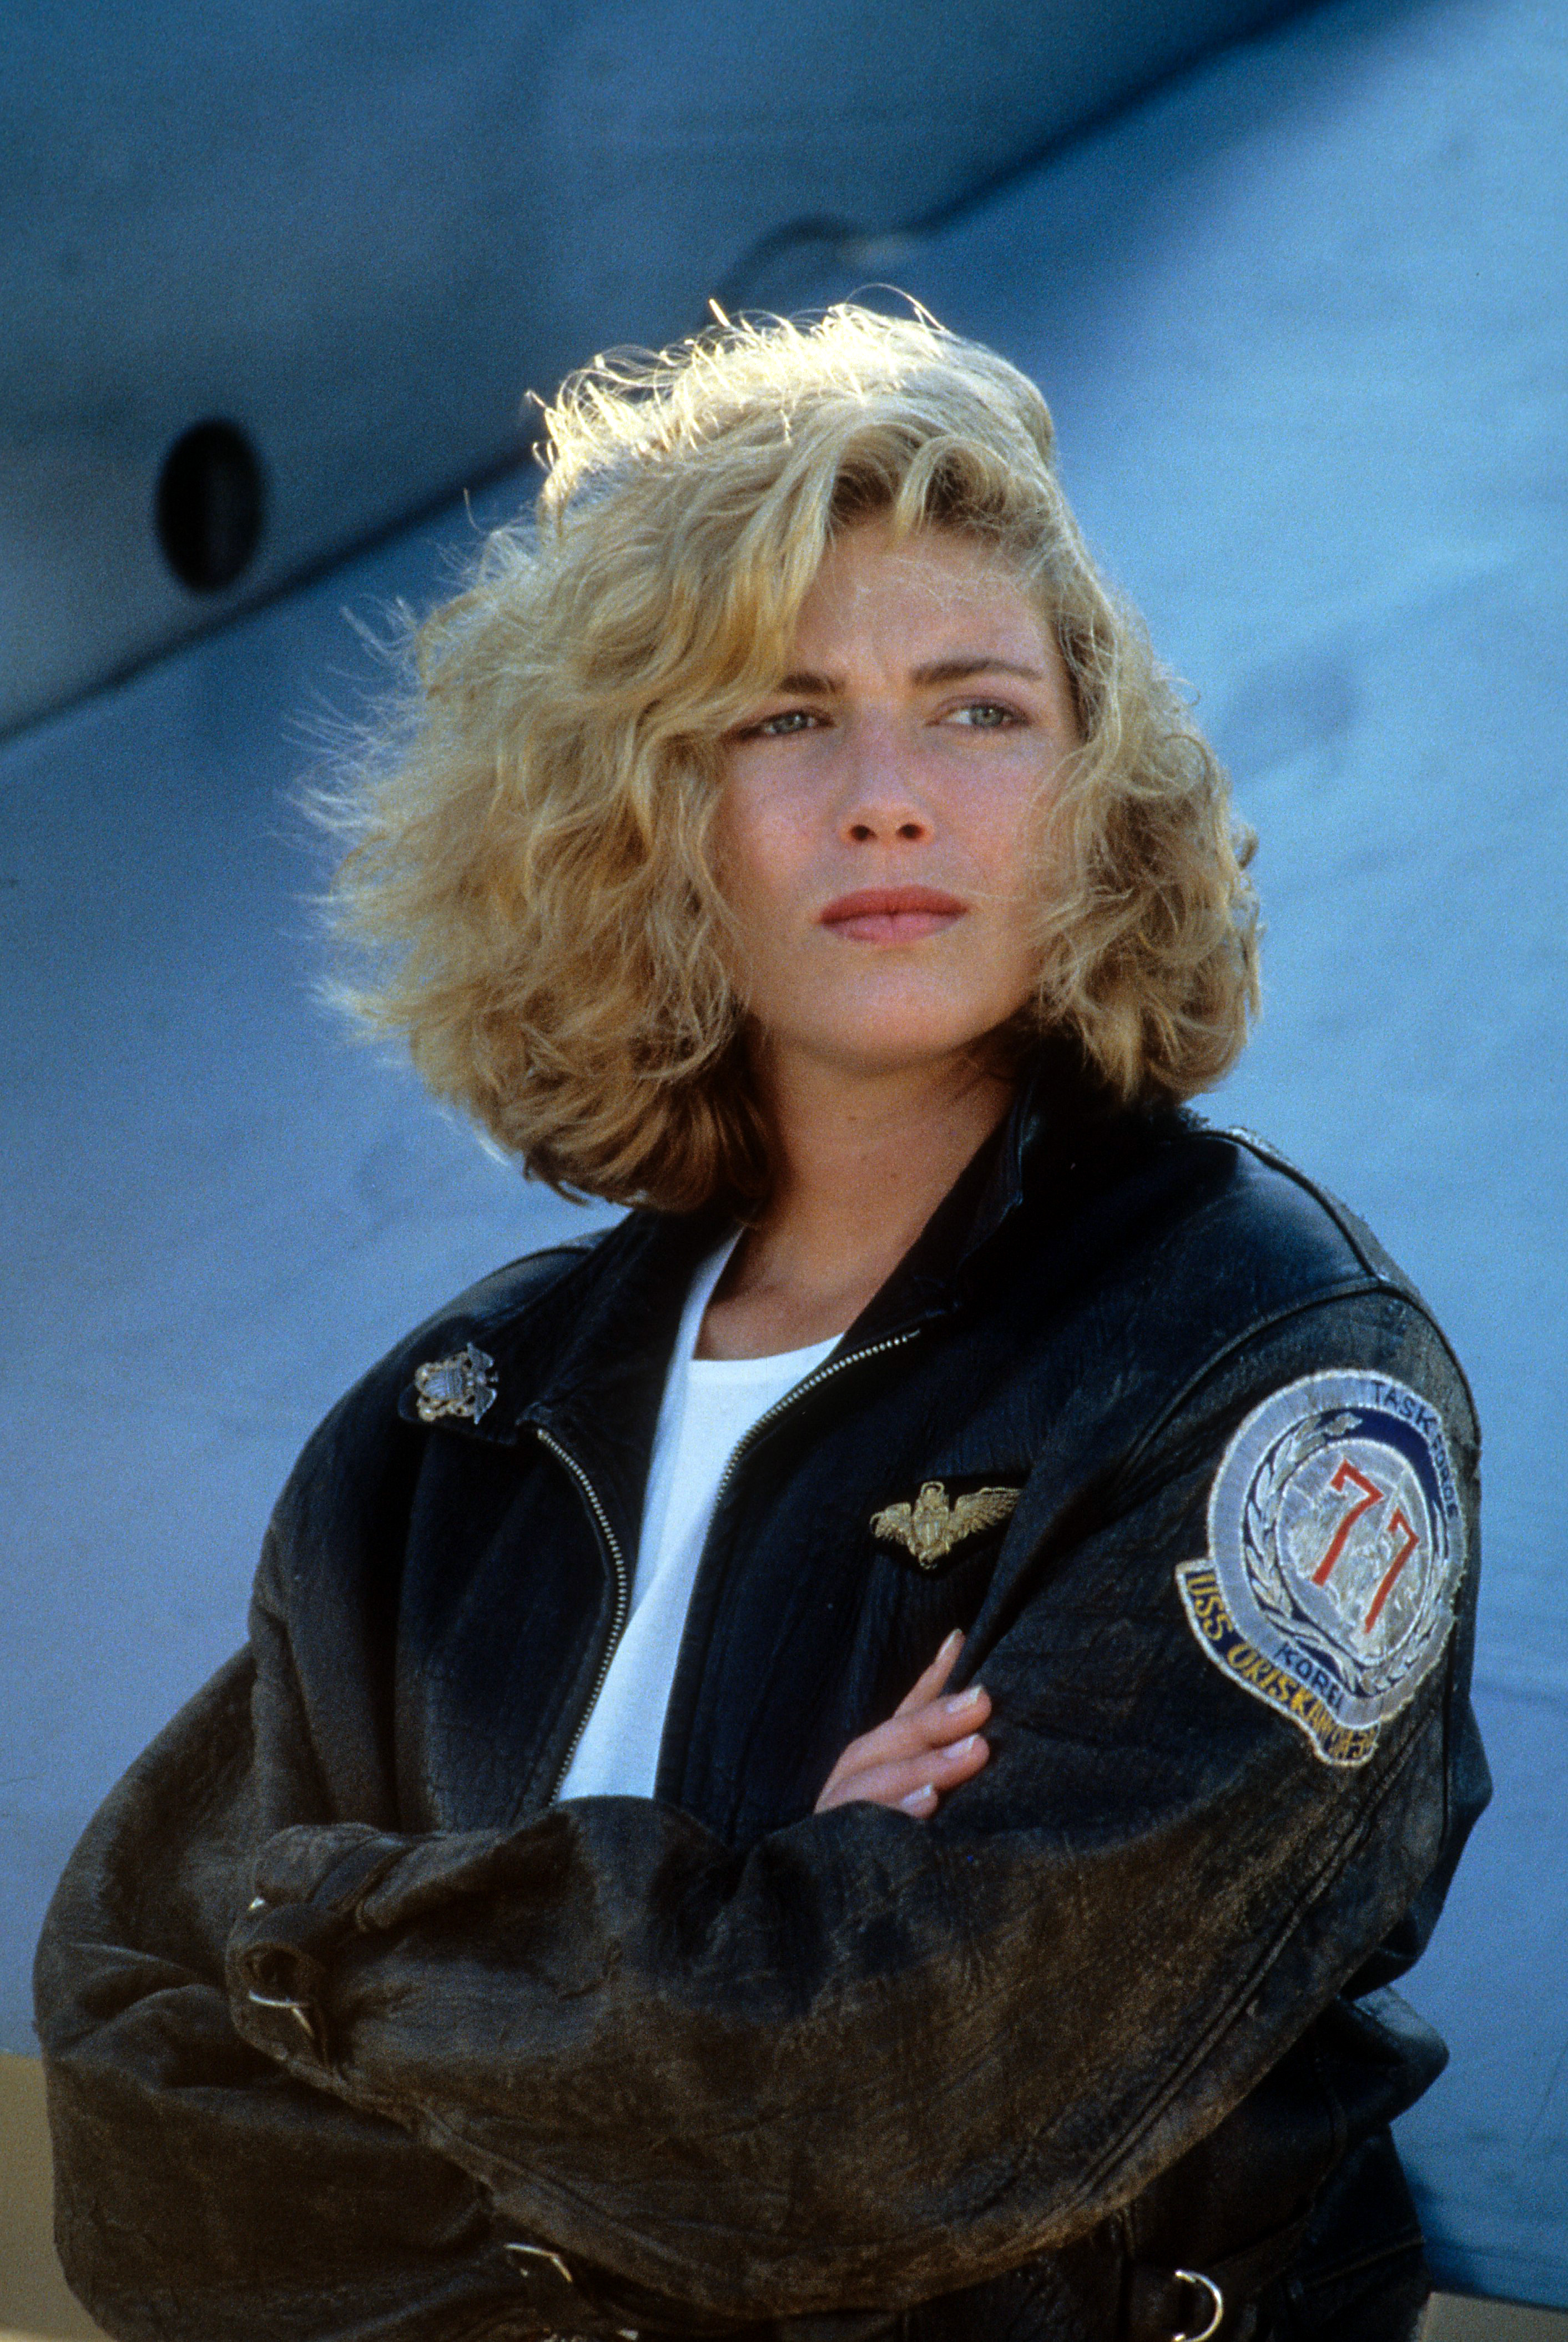 Kelly McGillis en una escena de "Top Gun" en 1986 | Foto: Getty Images